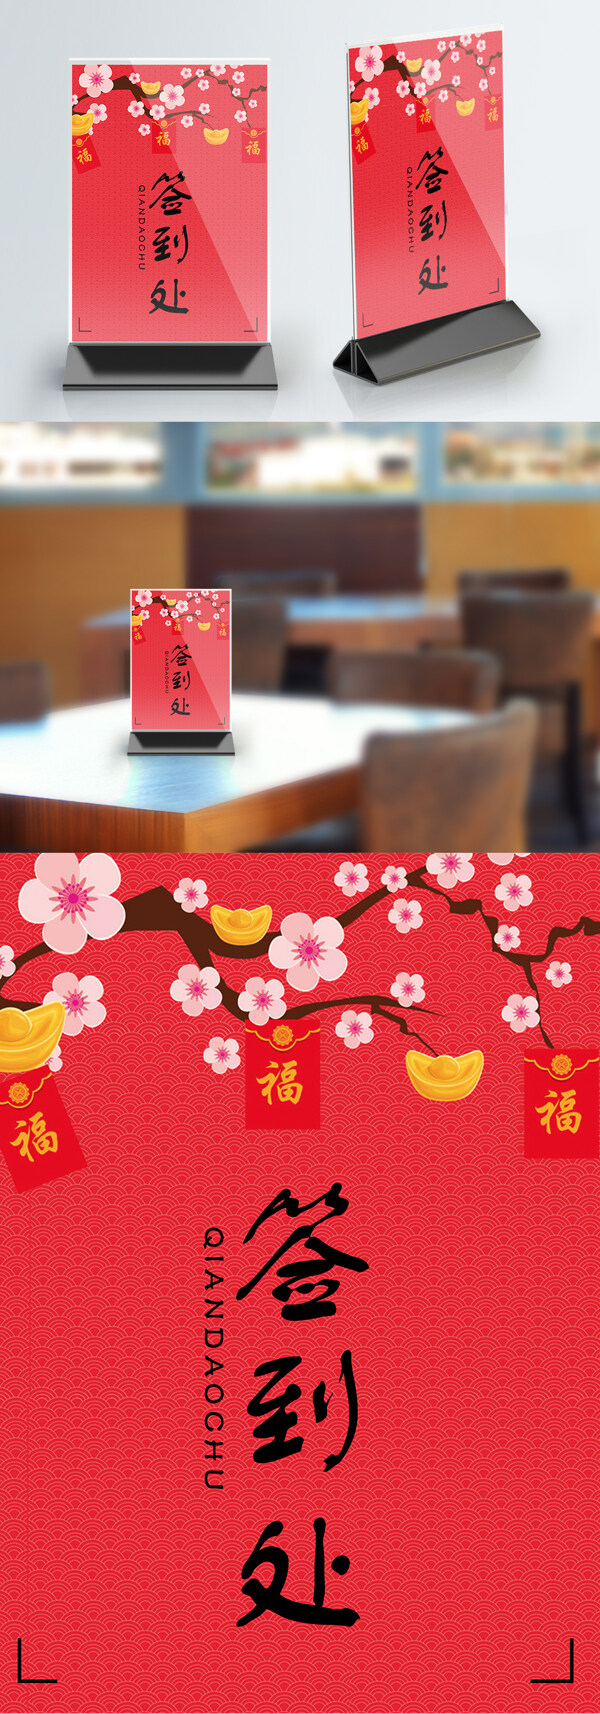 新年喜庆简约中国风桌卡设计